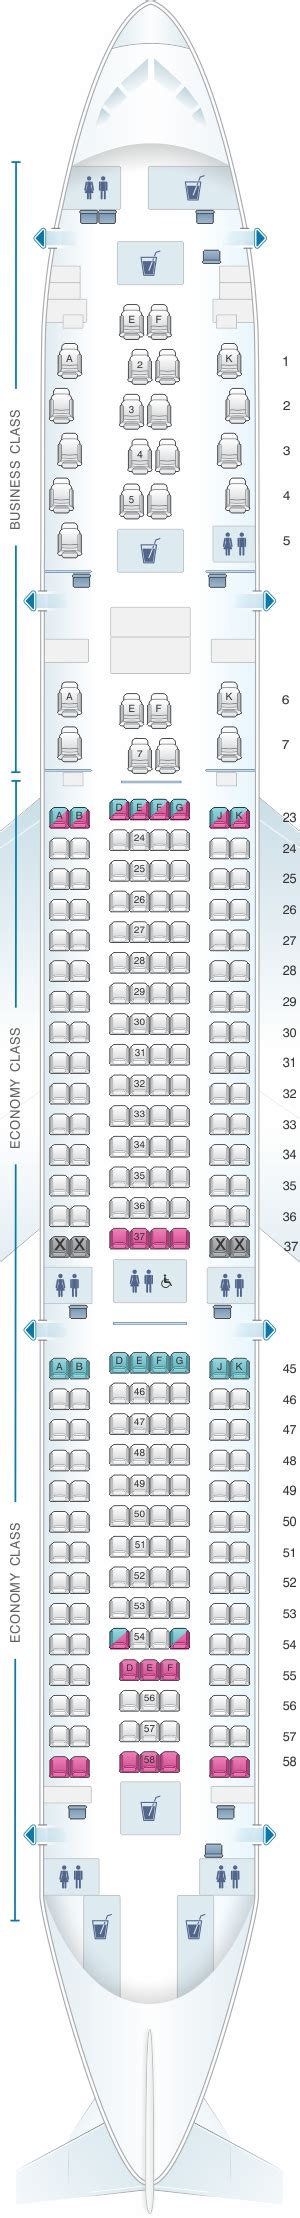 Qantas A330 300 Seat Guru